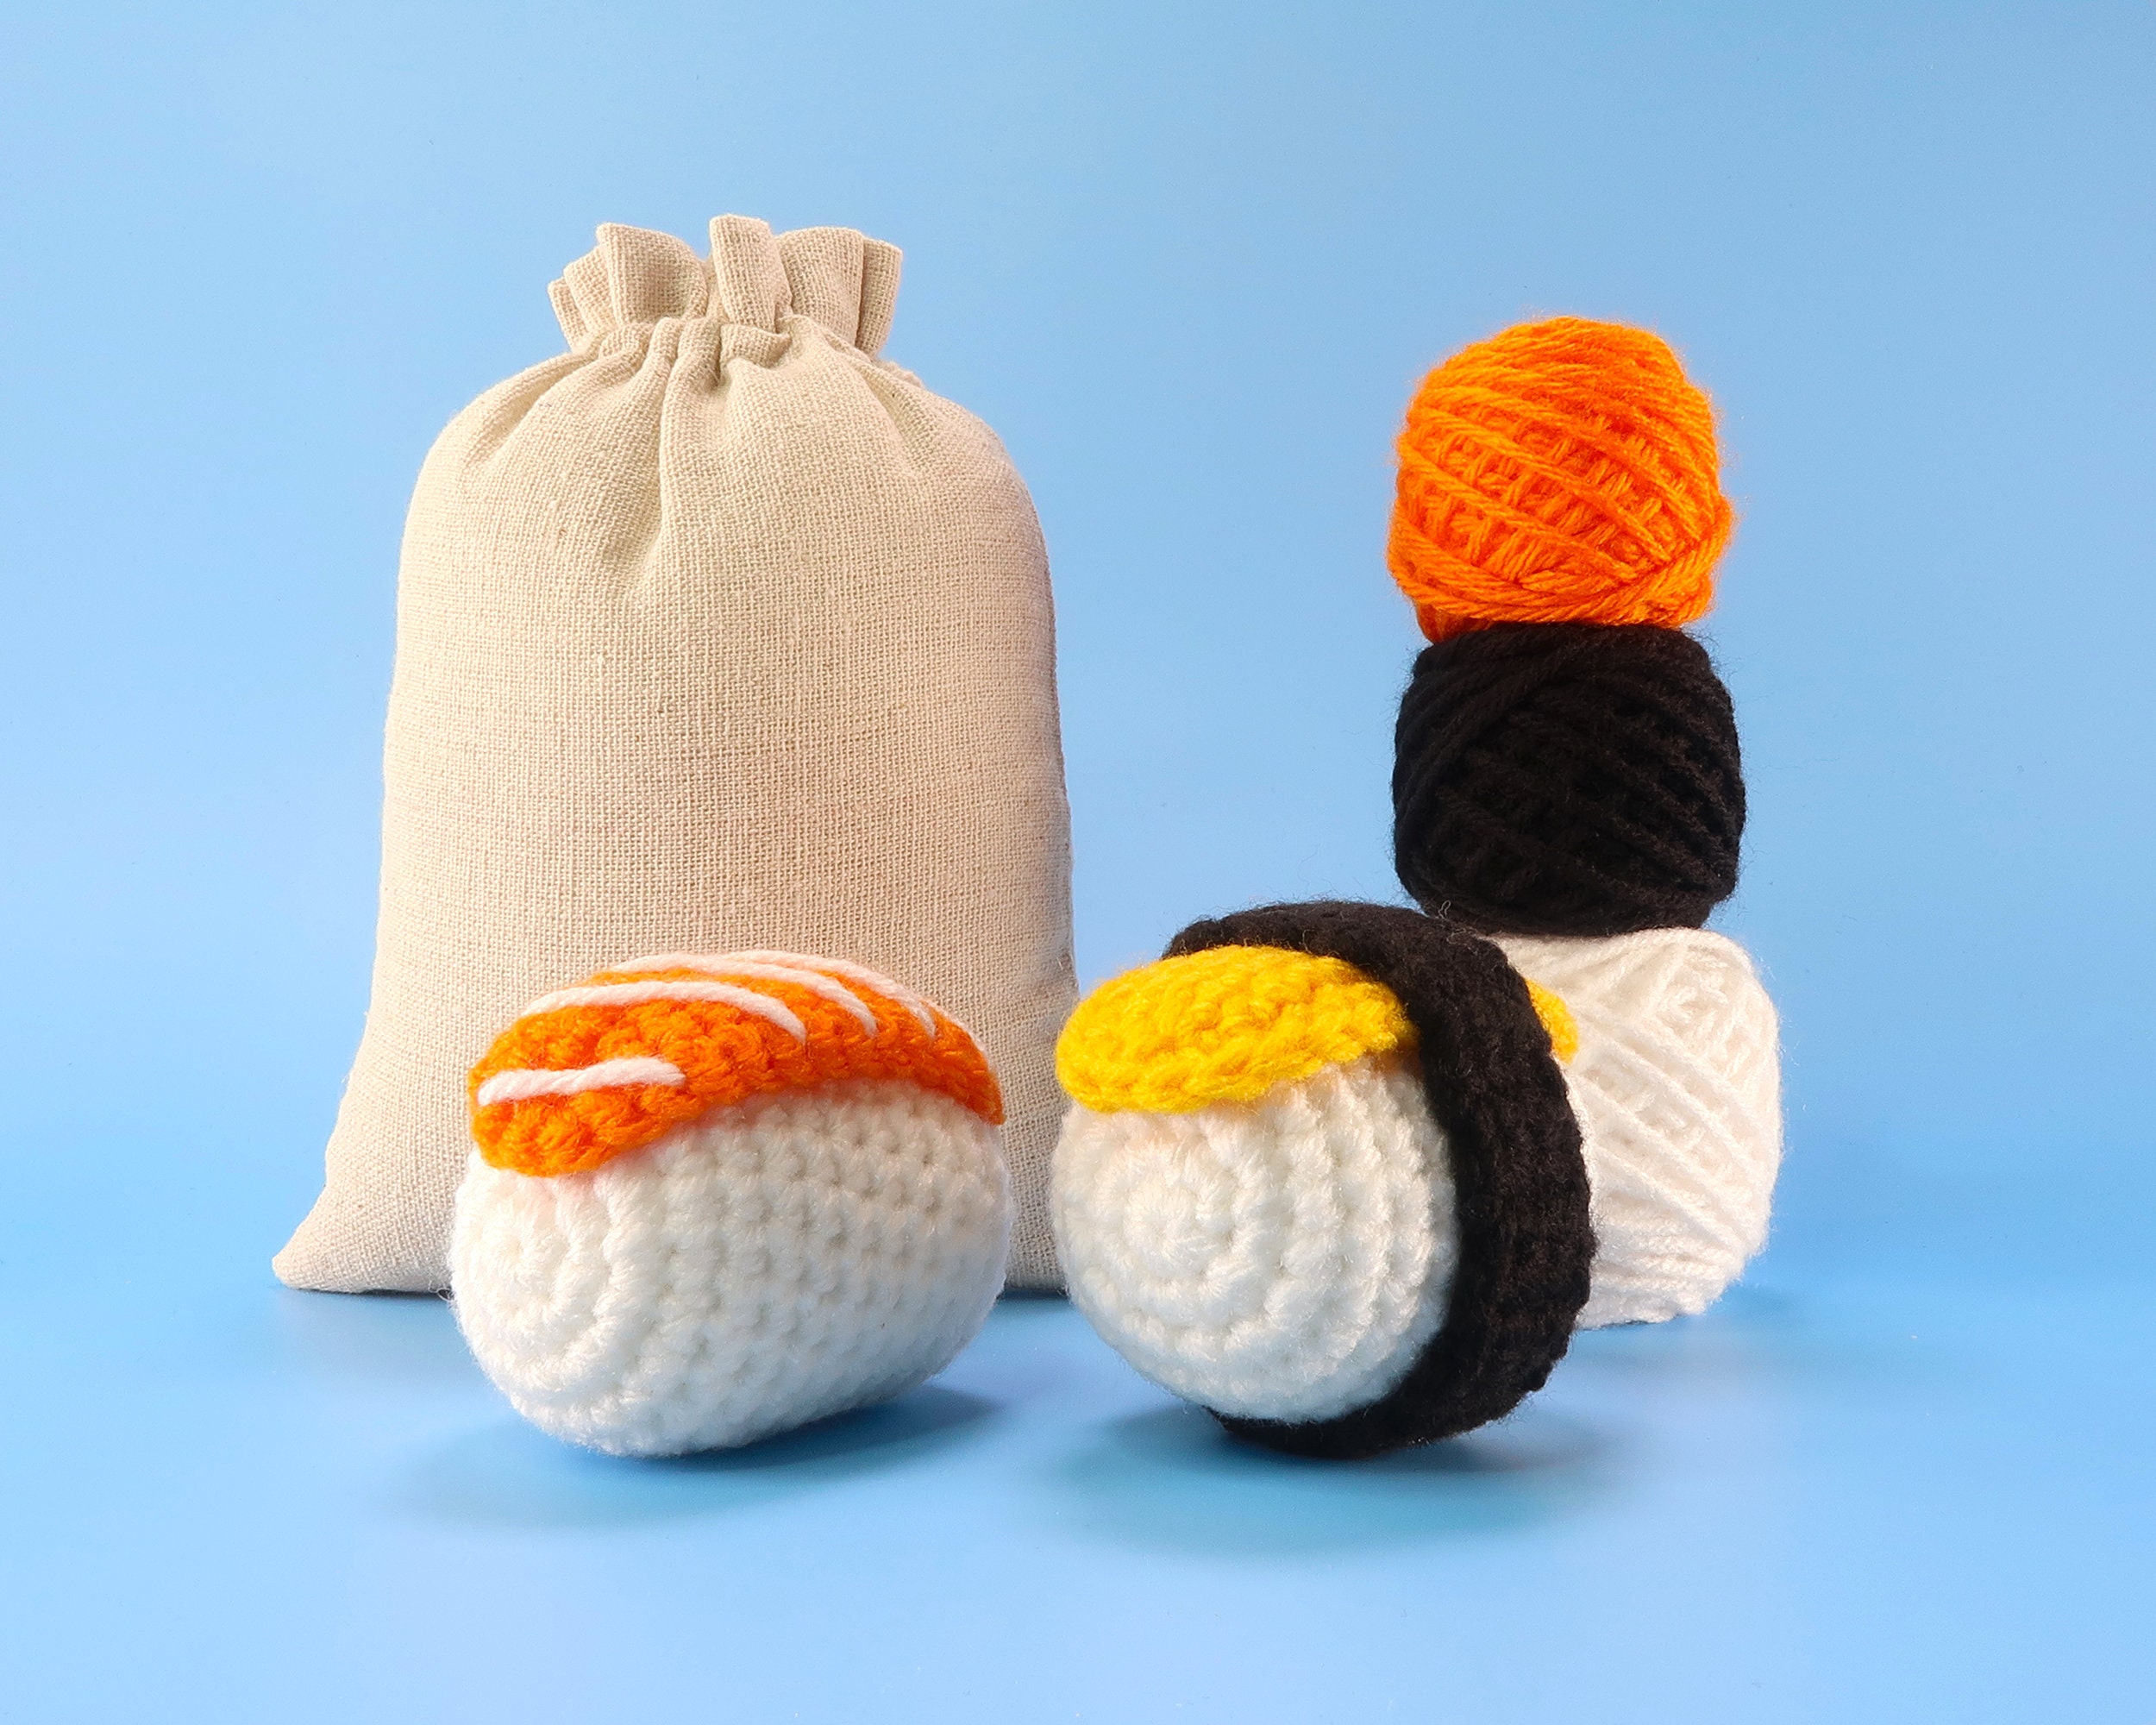 Beginner Red Panda Crochet Kit Easy Crochet Starter Kit Crochet Animals Kit  Amigurumi Kit Crochet Gift Animal Crochet Store 